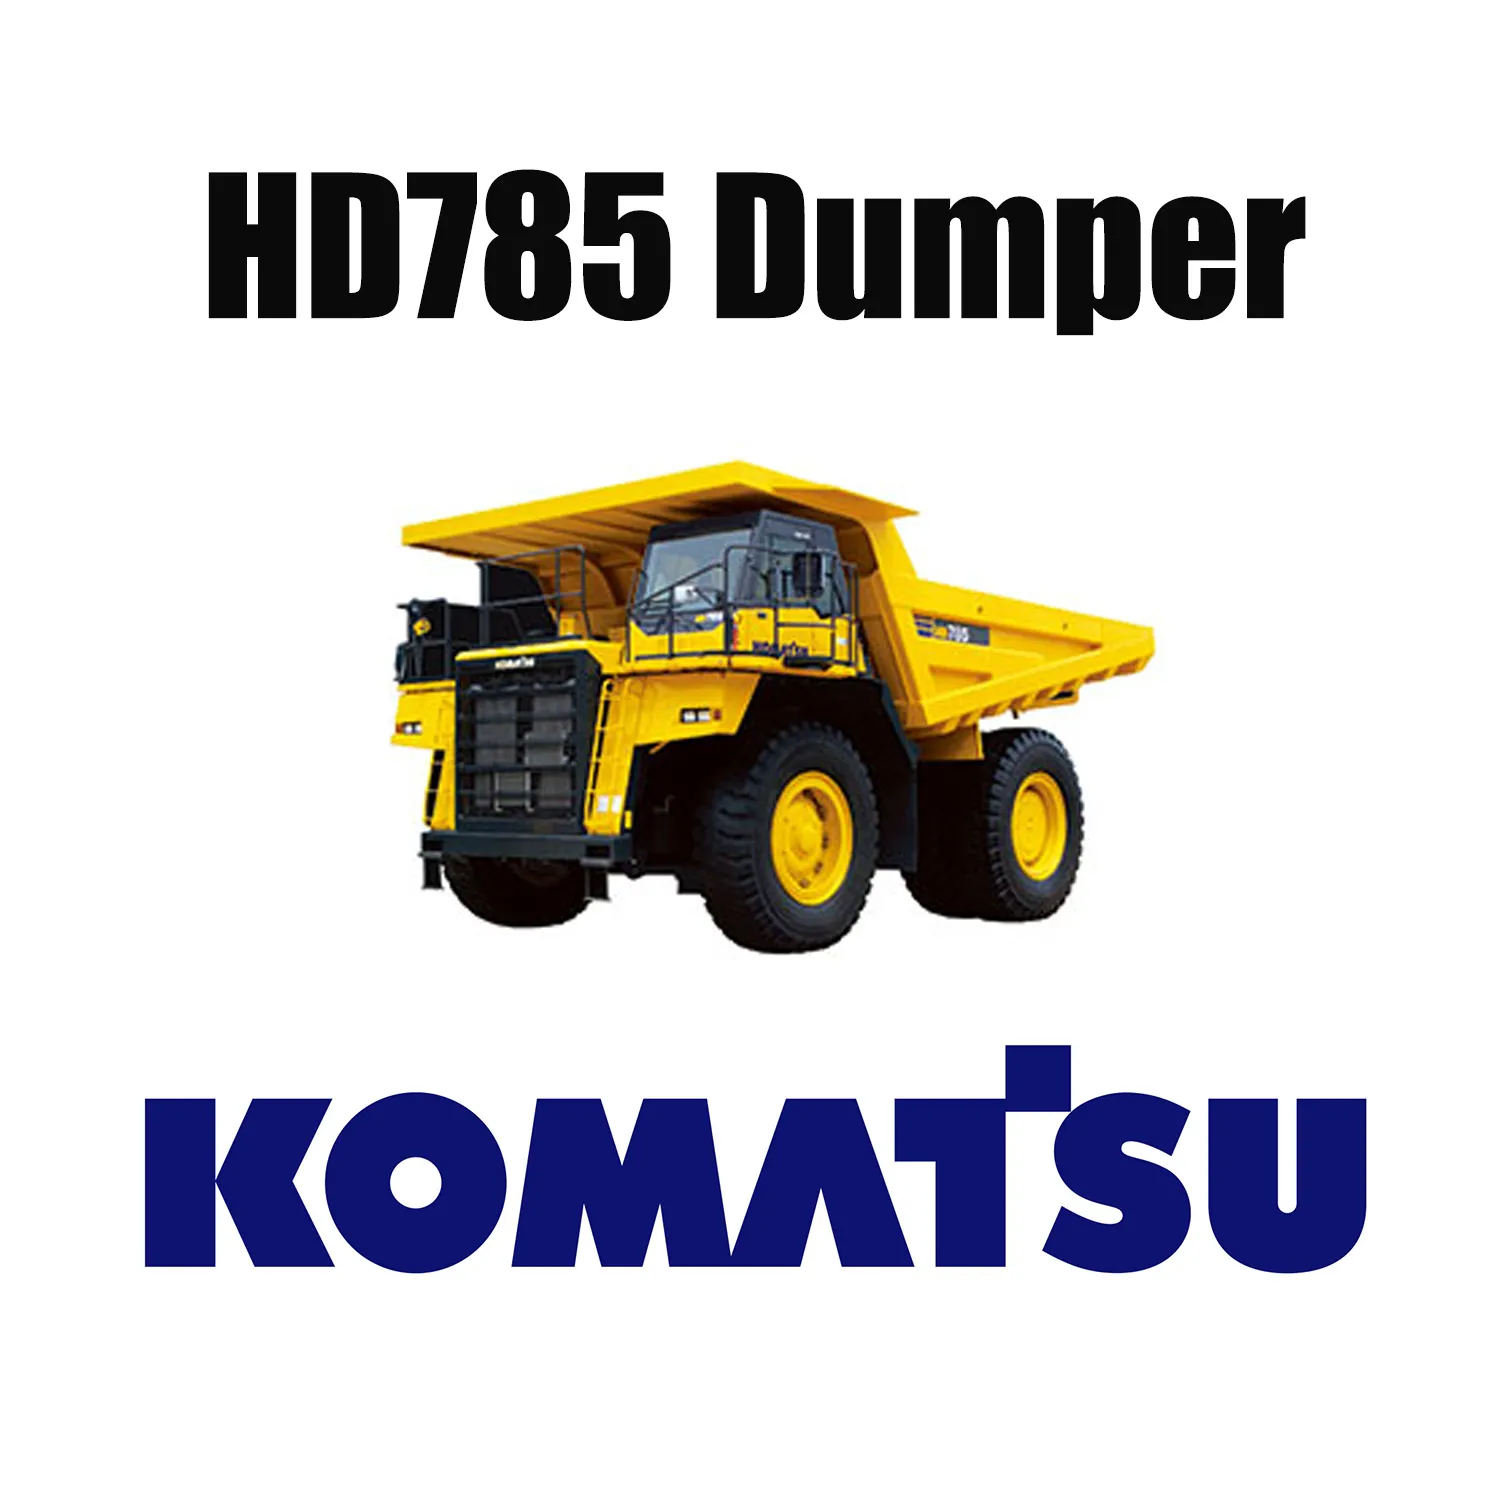 Lốp OTR đặc biệt khai thác mỏ 27.00R49 cho xe tải tự đổ KOMATSU HD785